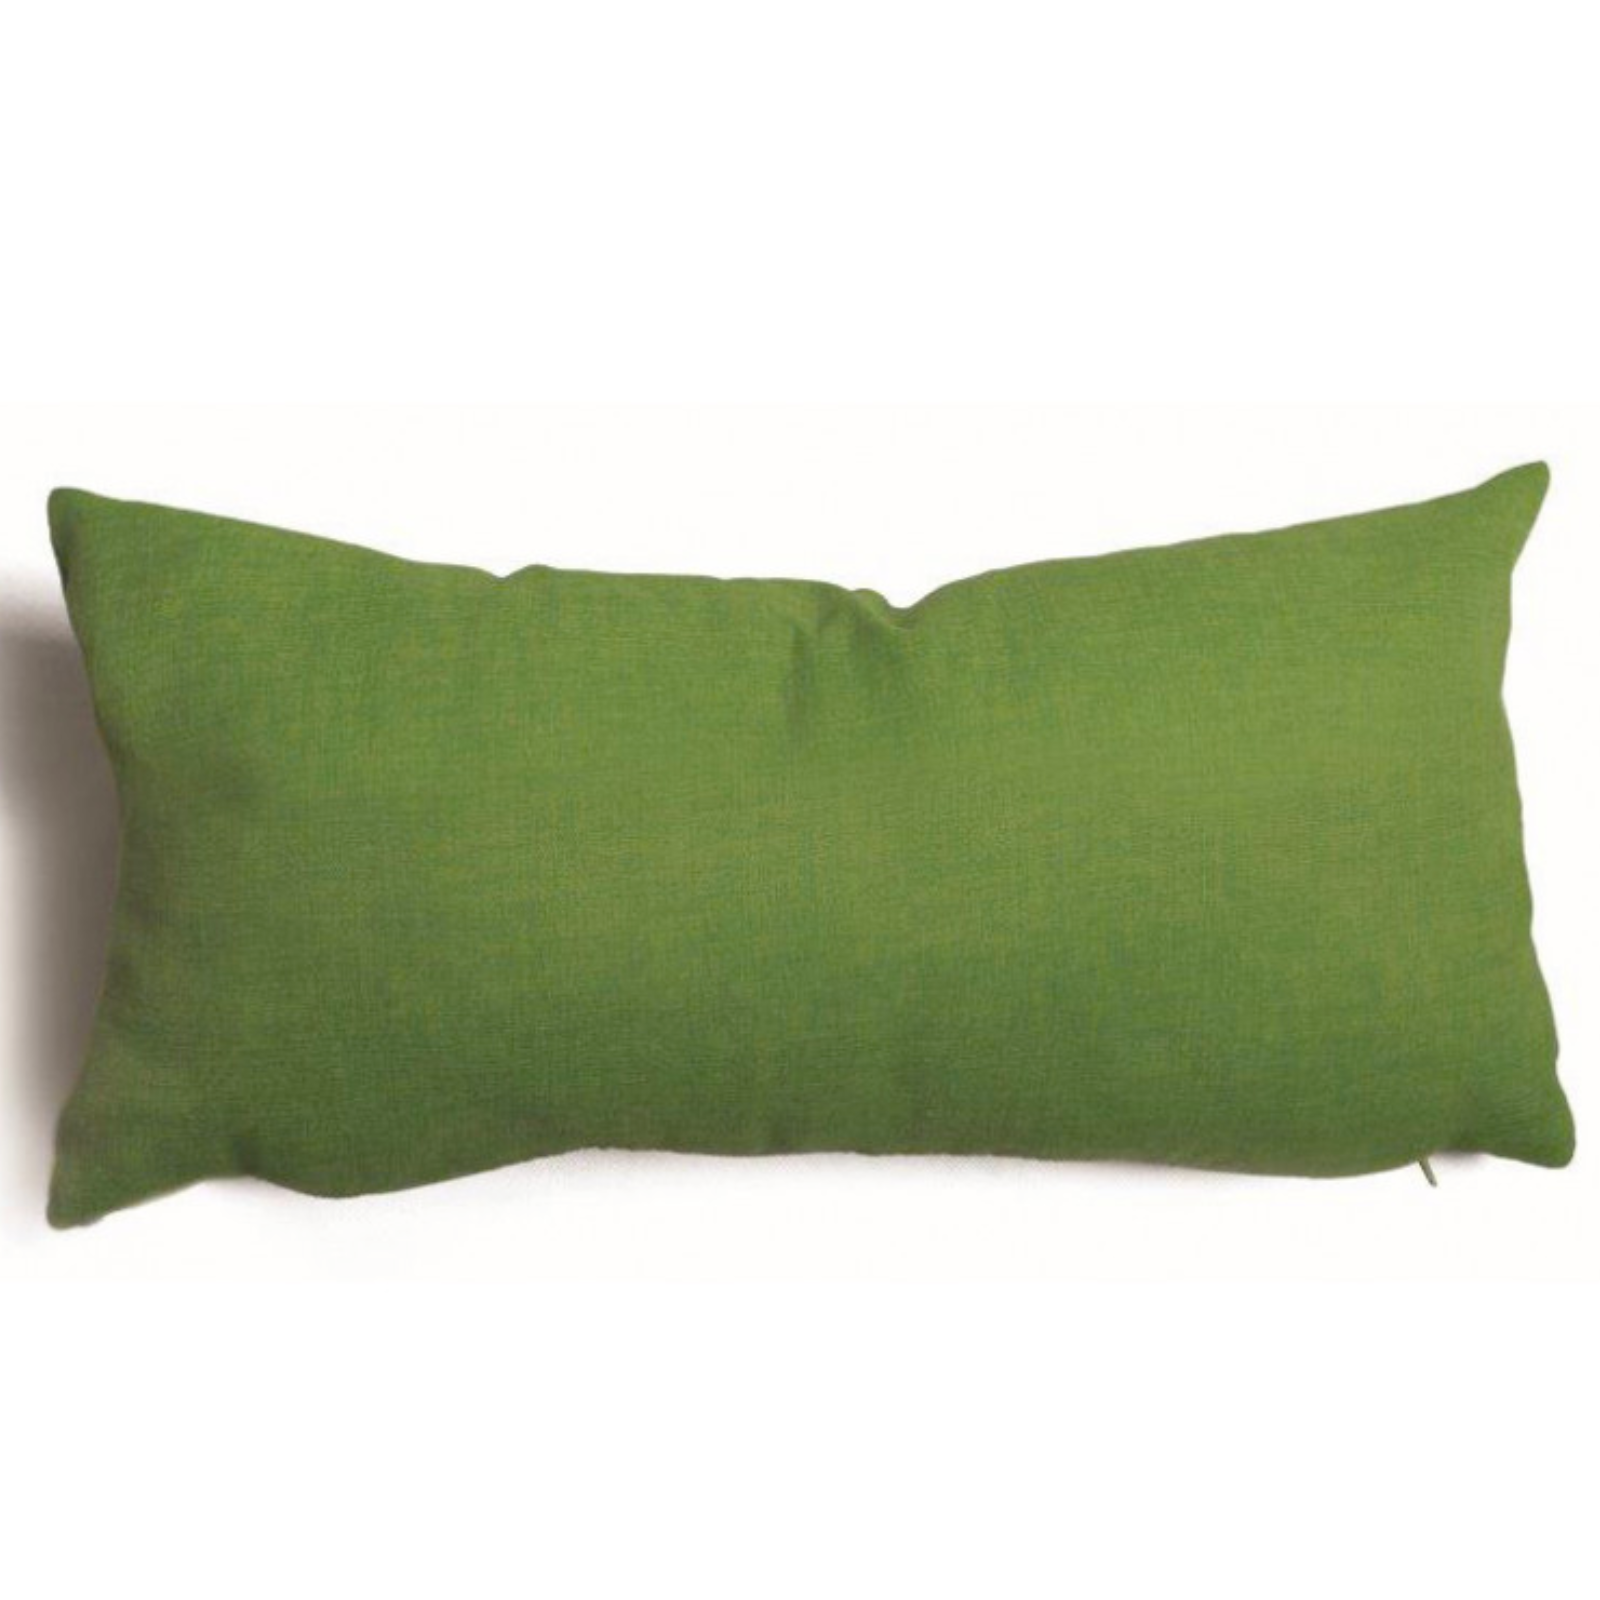 Cuscino d'arredo in poliestere rettangolare verde con imbottitura morbida in fiocco di silicone Verde